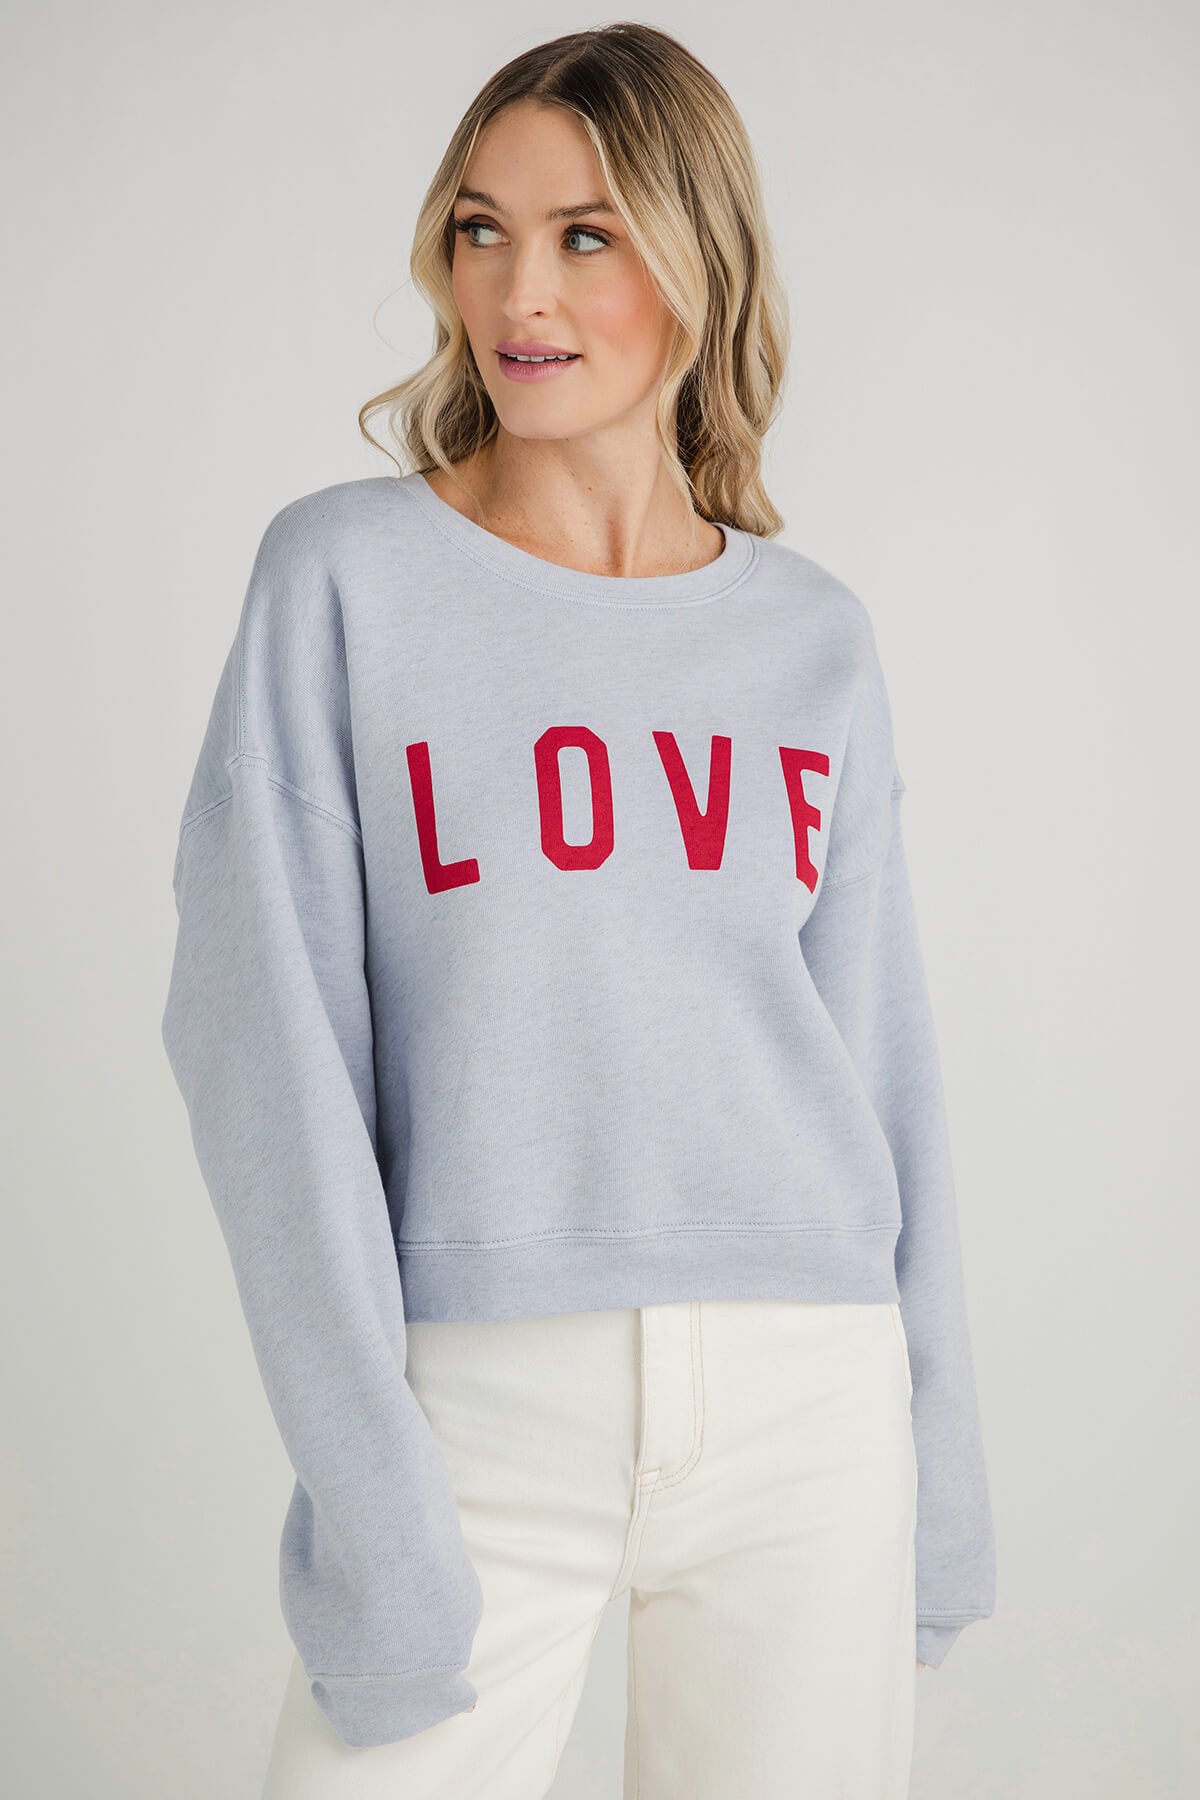 Oat Collective Love Sweatshirt